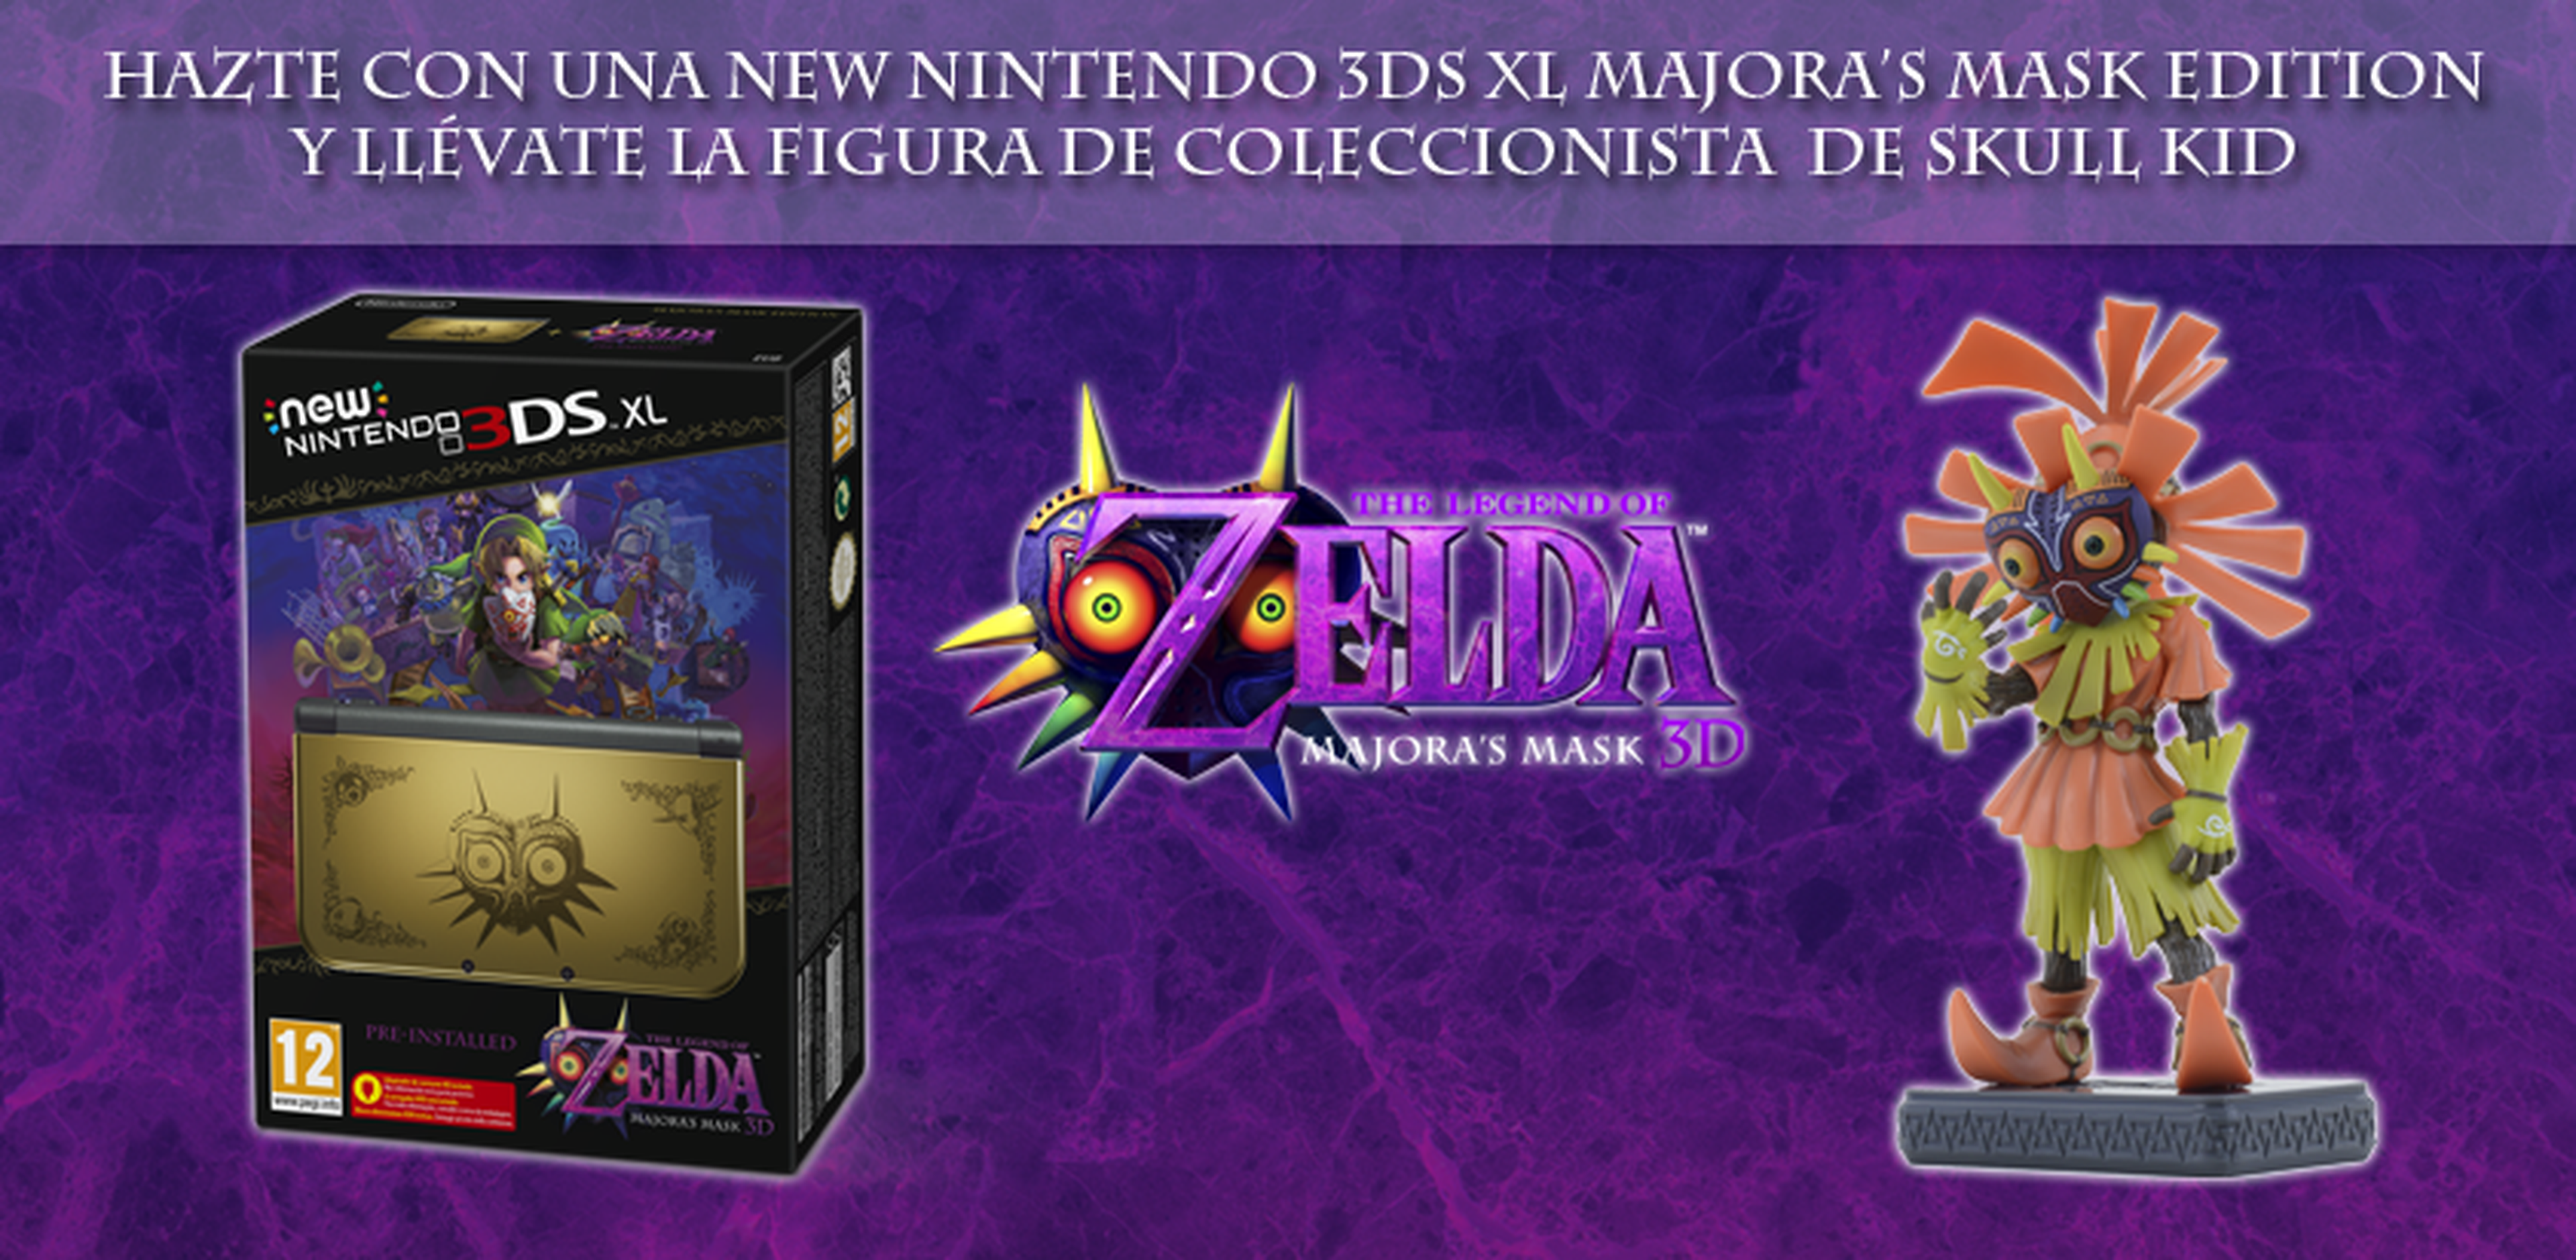 La figura de Skull Kid con New Nintendo 3DS XL Majora’s Mask Edition llegará a España